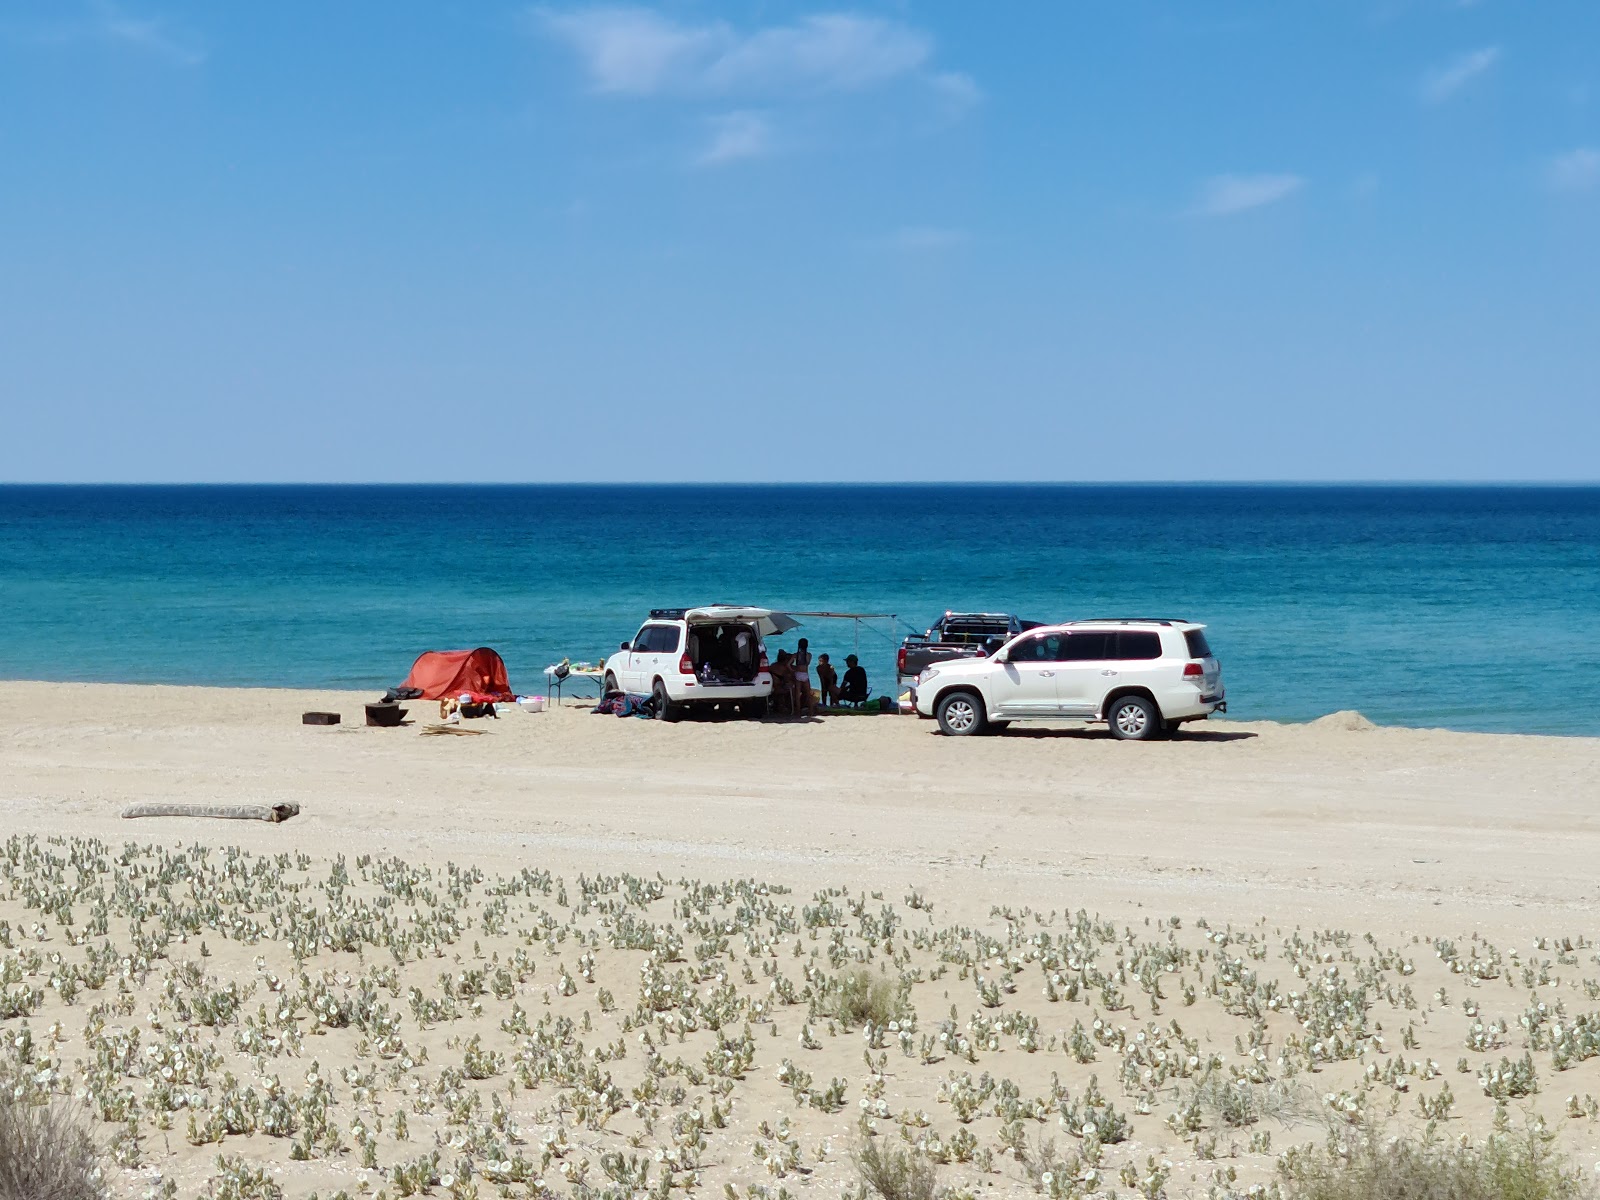 Fotografie cu Alau beach - locul popular printre cunoscătorii de relaxare